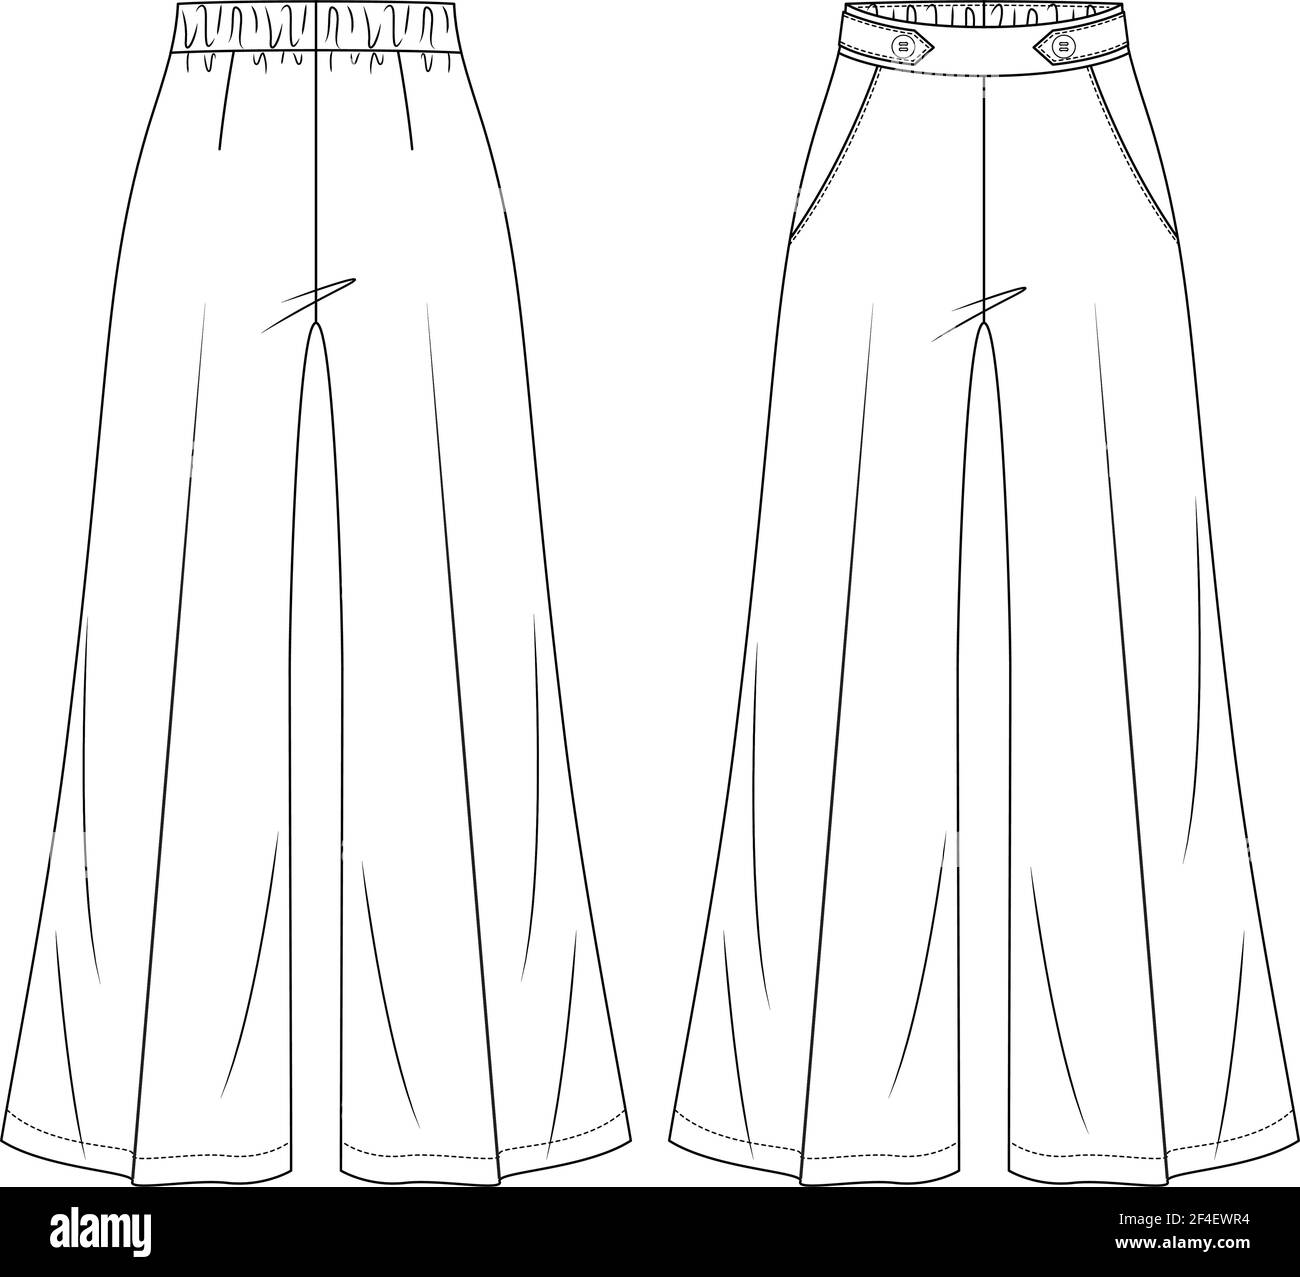 Donna Flare High vita Palazzo Pantaloni Vector Fashion Flat Sketches. Modello di illustrazione tecnica della moda della pantaloni a gamba larga Illustrazione Vettoriale